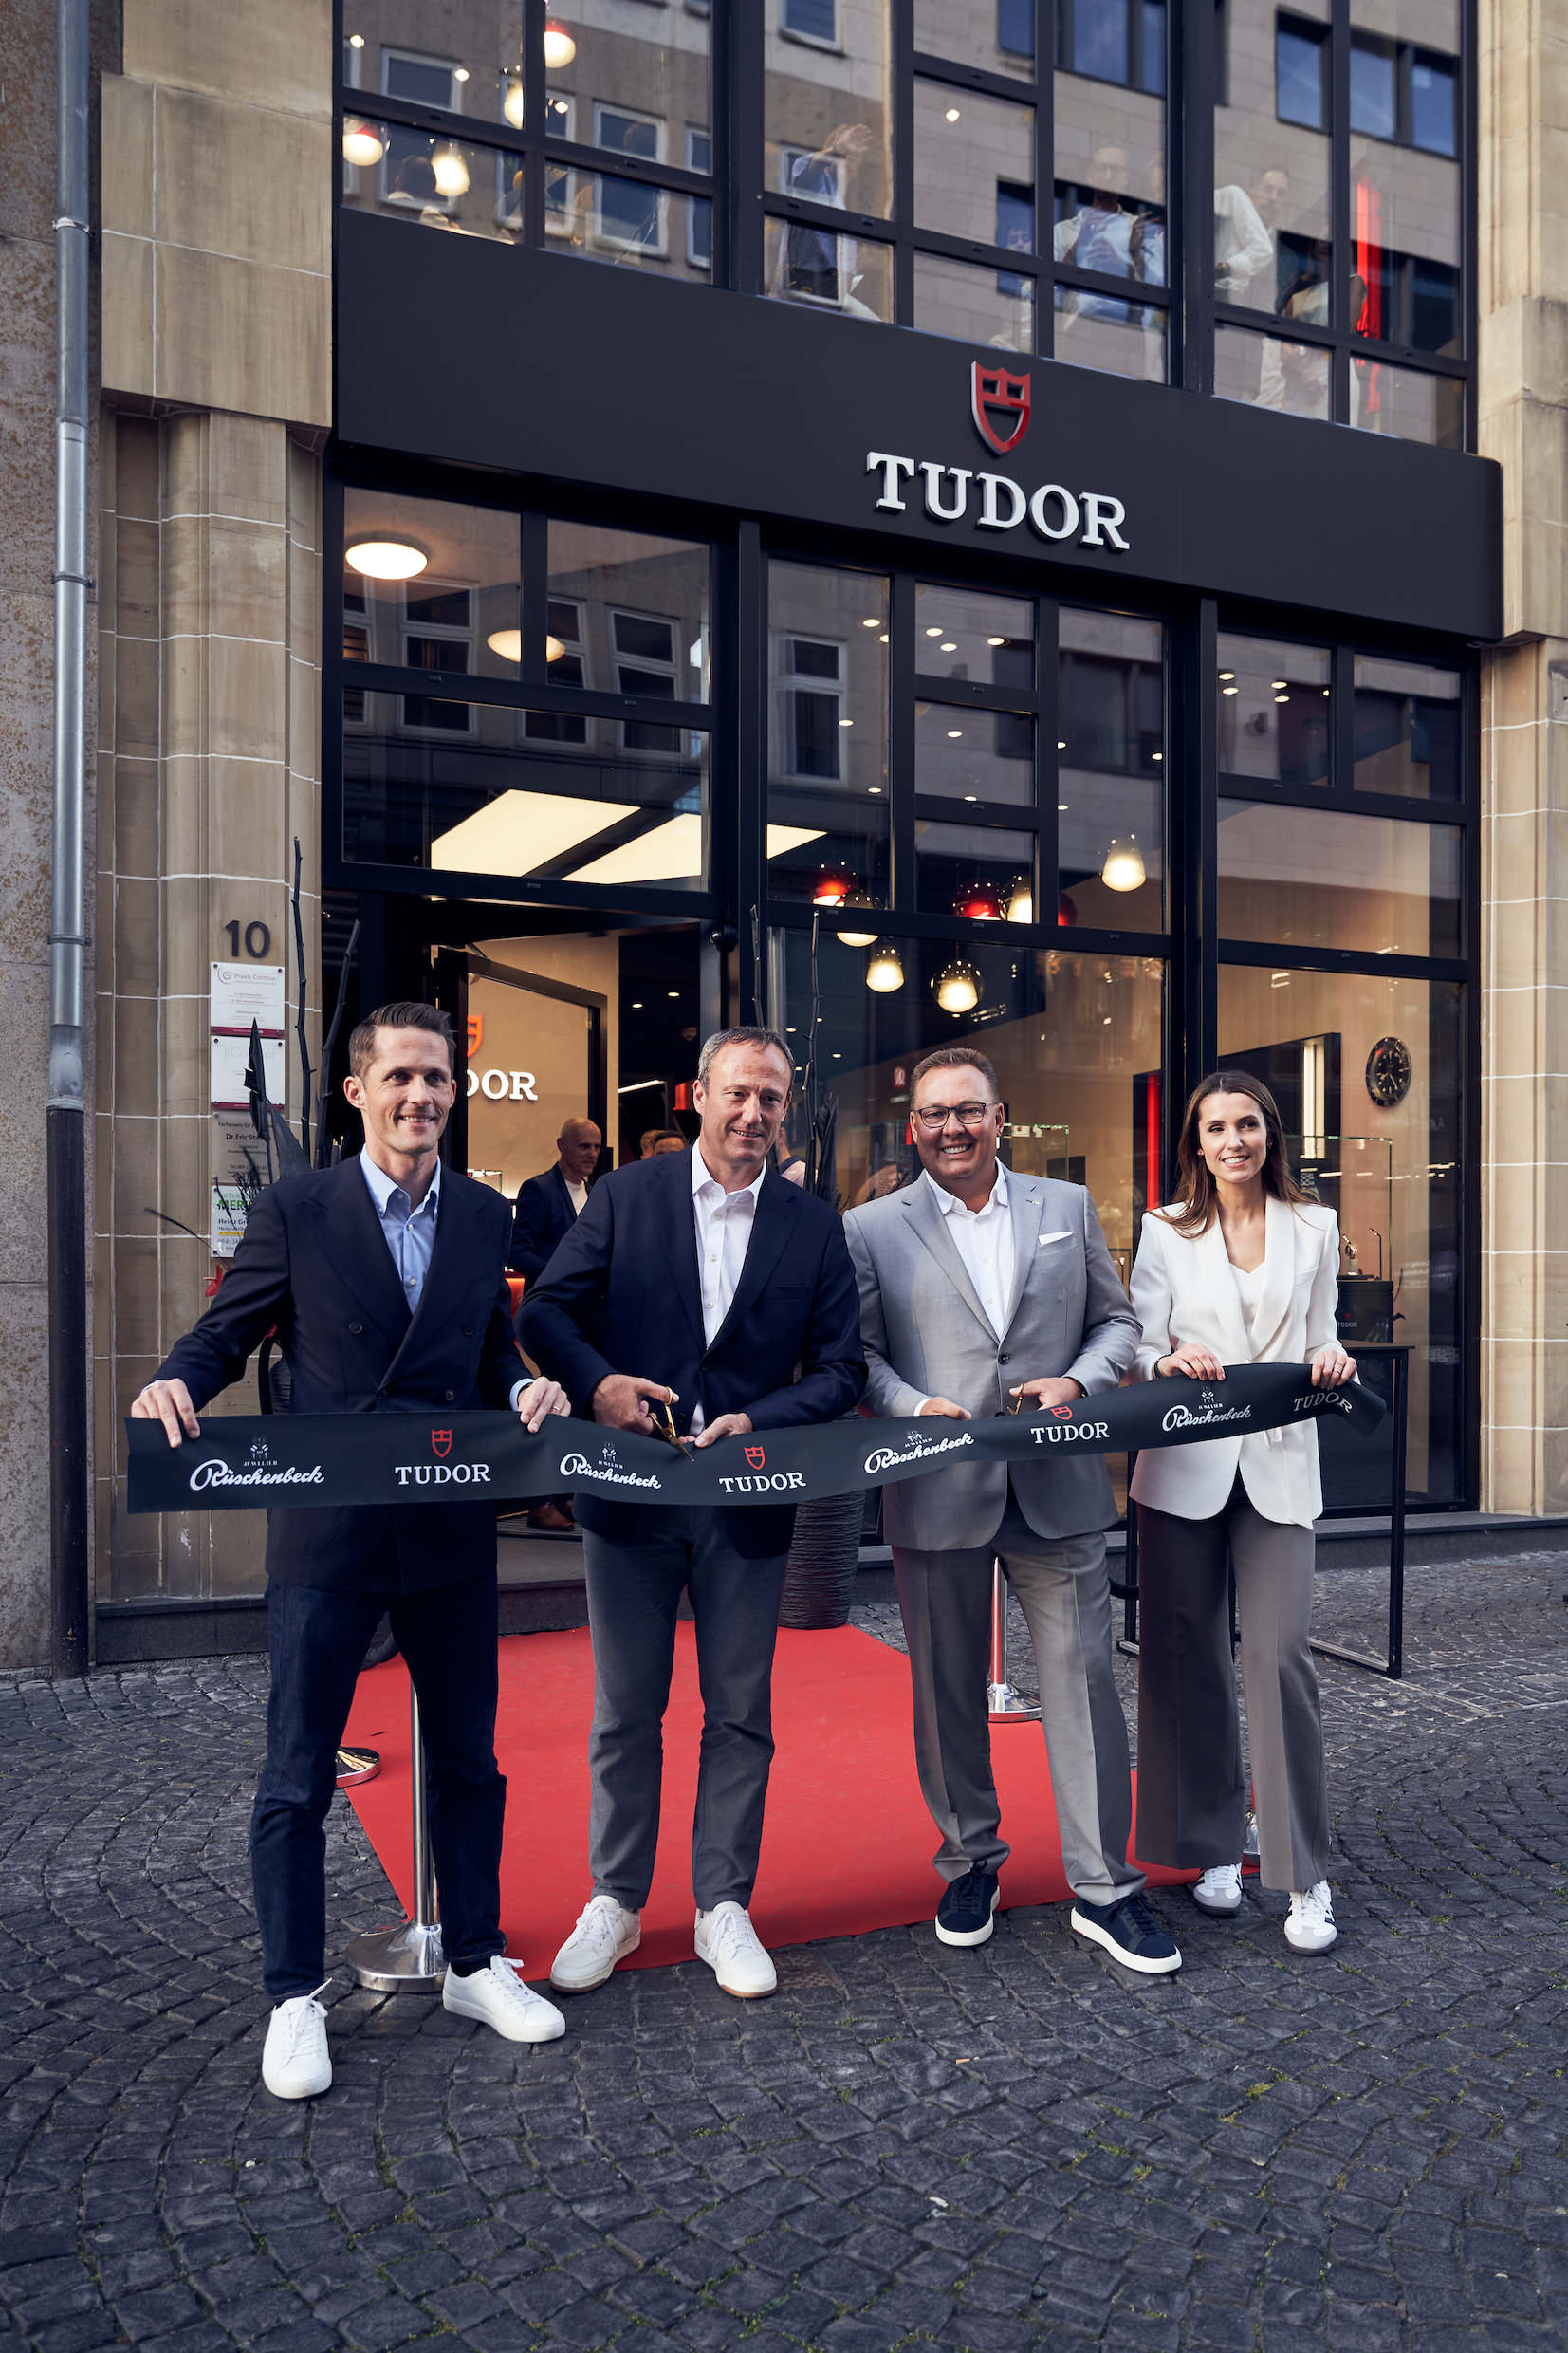 Eröffnung der neuen Tudor Boutique in Frankfurt am Main